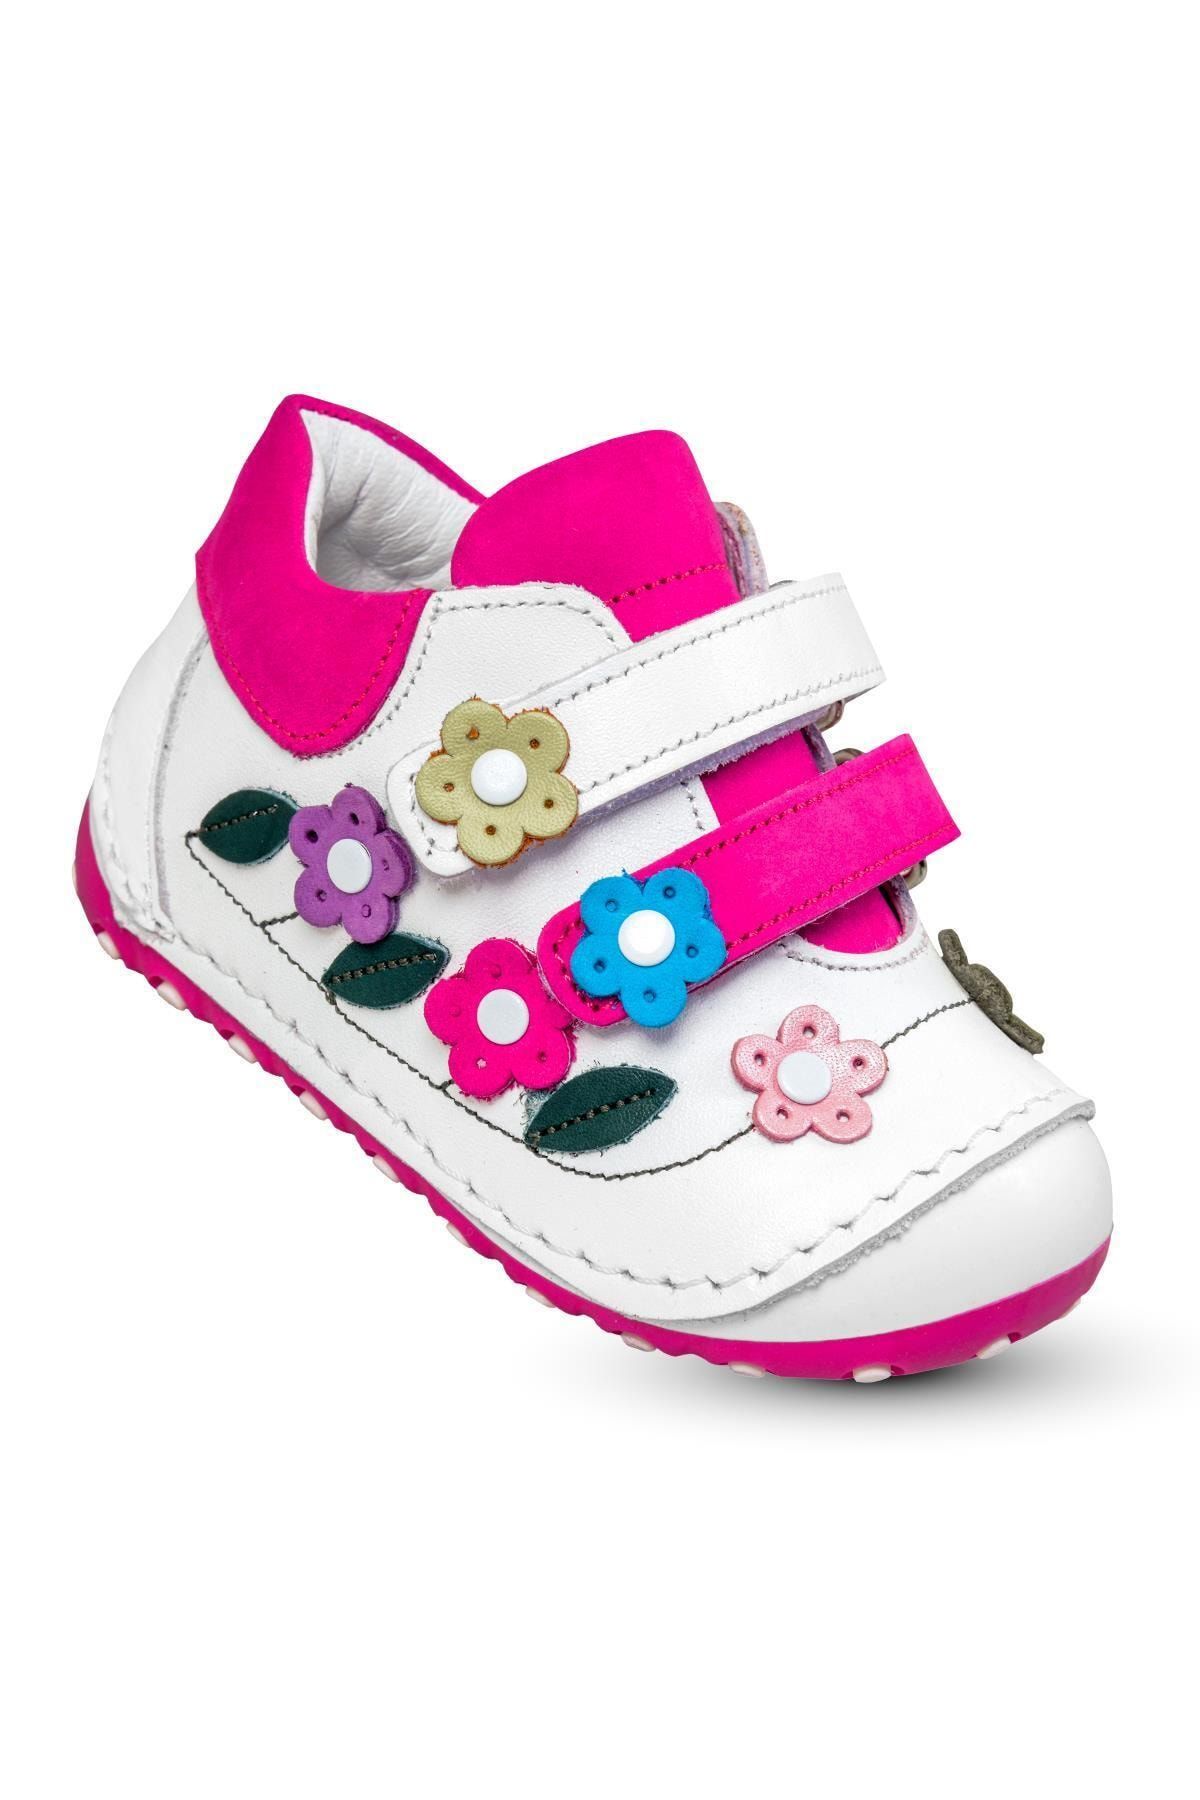 KAPTAN JUNIOR Ilkadım Hakiki Deri Kız Bebek Çocuk Ortopedik Ayakkabı Patik Imsk 700 Beyaz